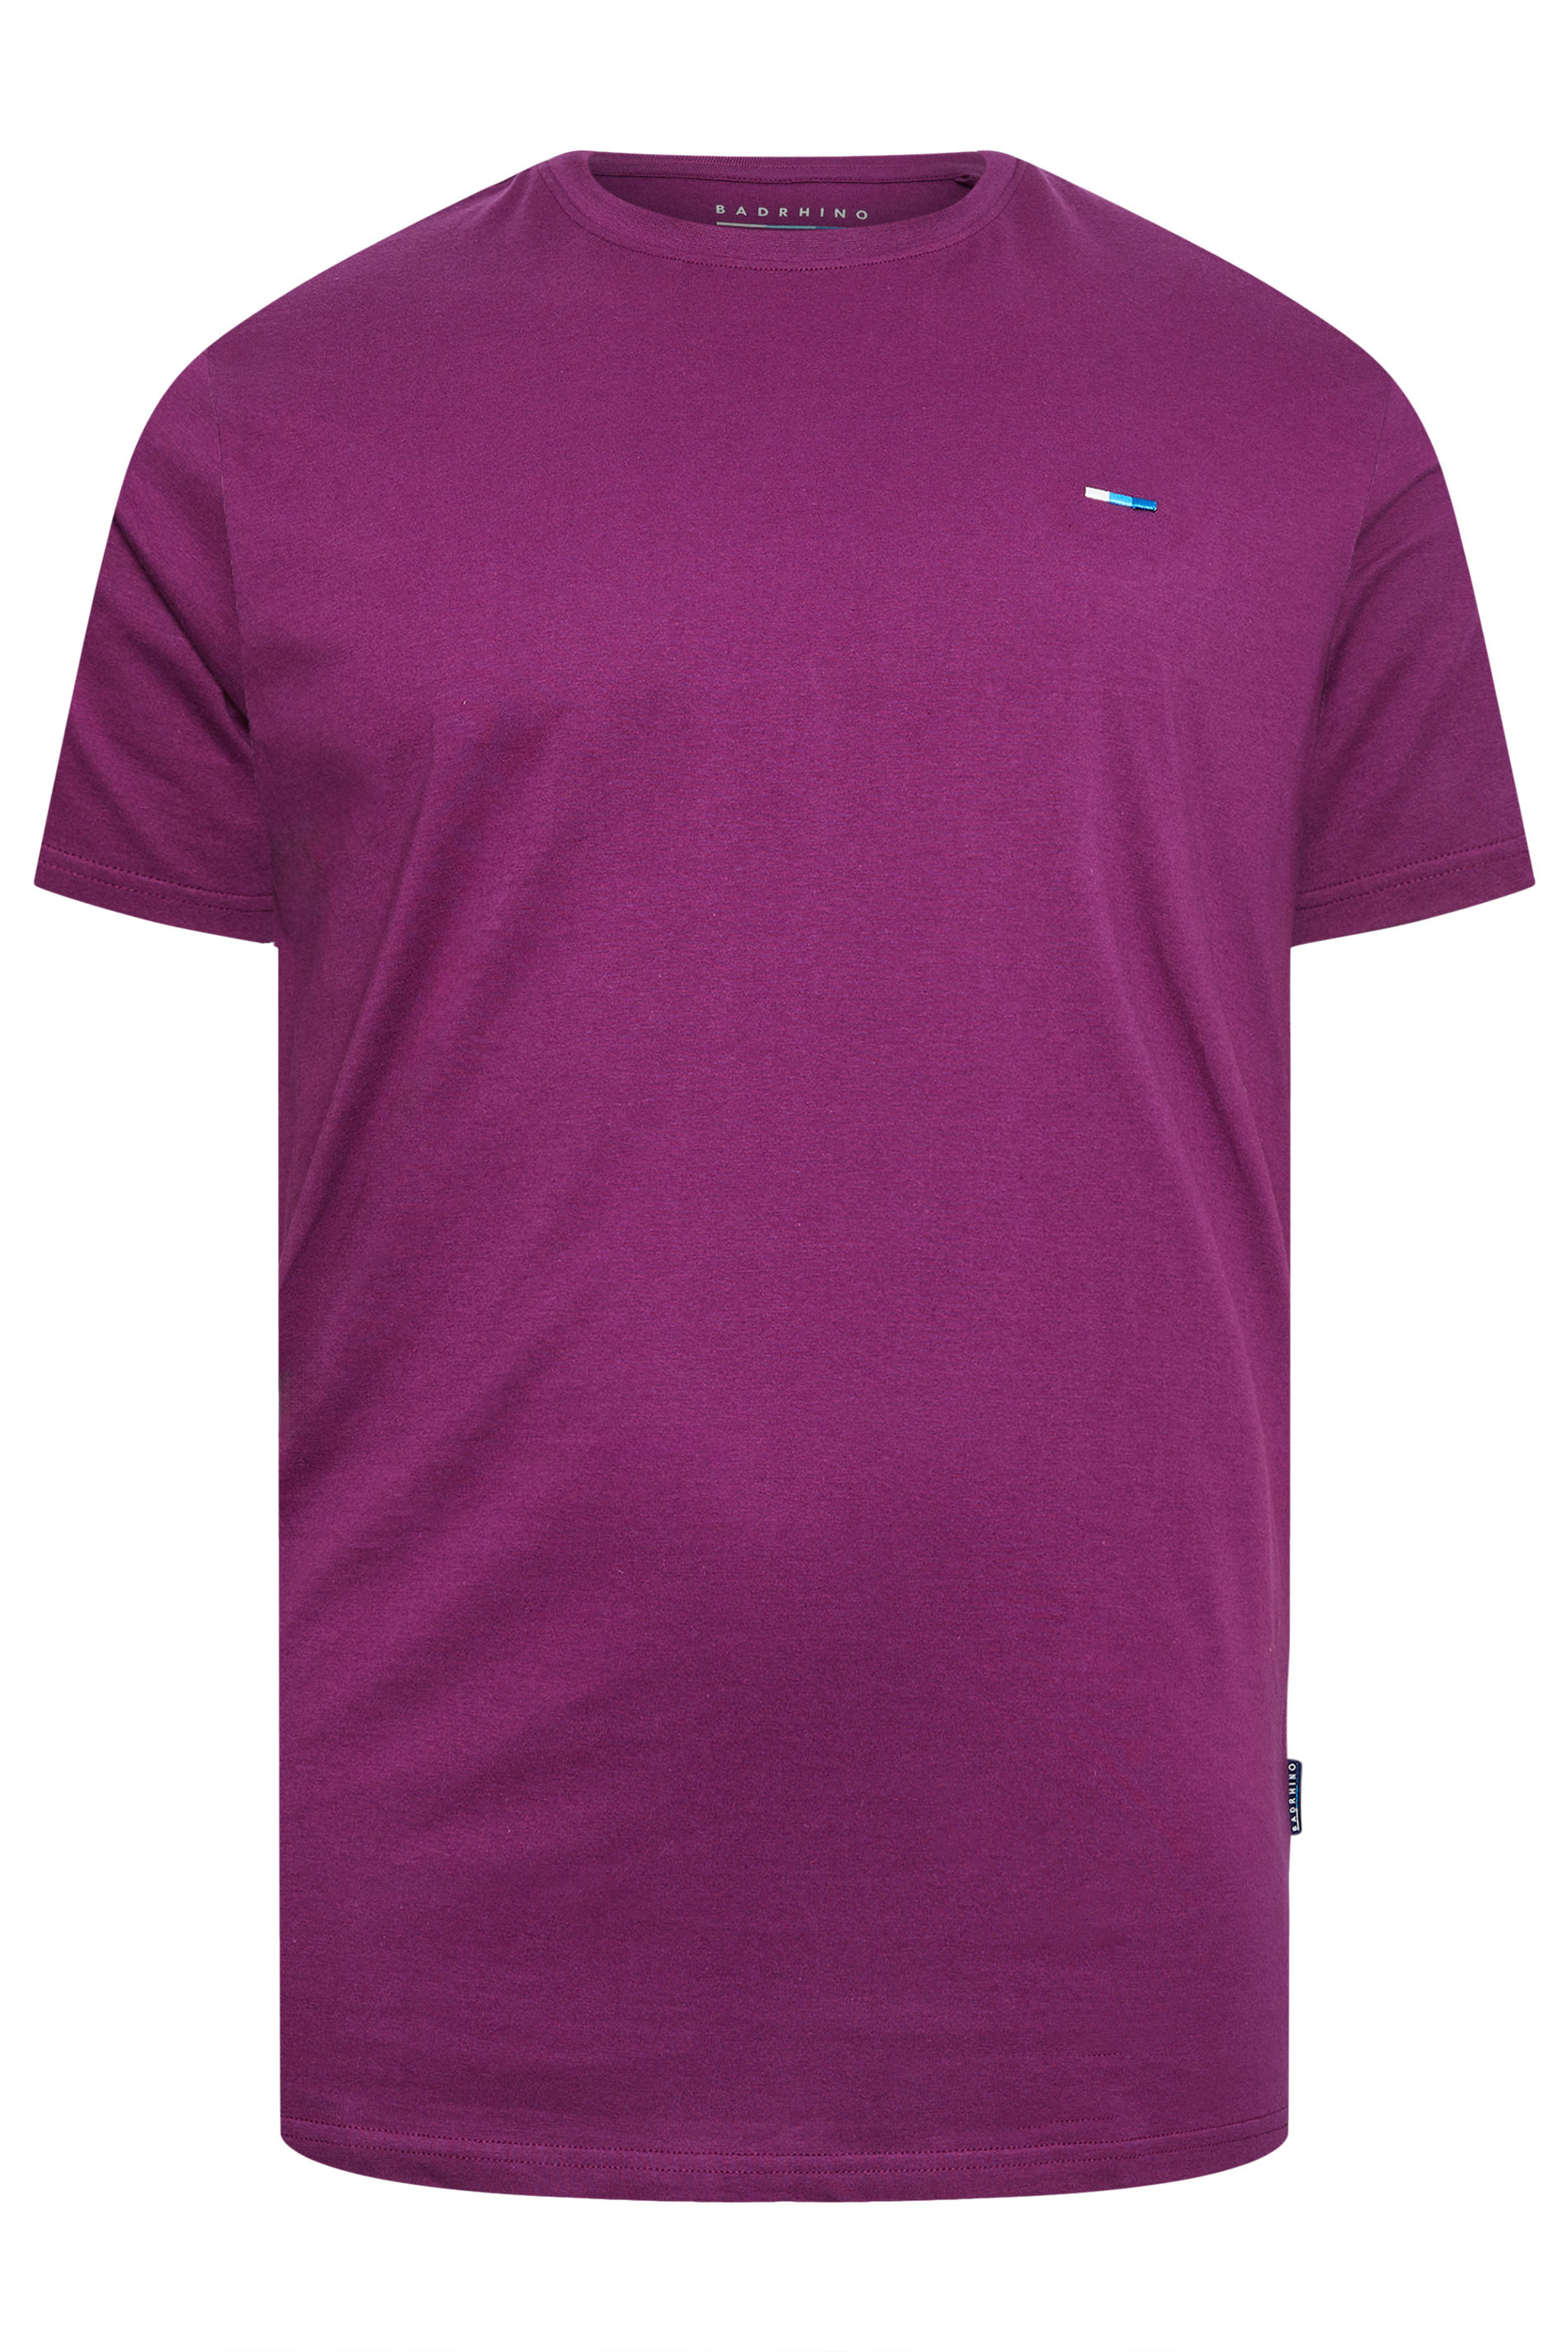 BadRhino Big & Tall Plum Purple Core T-Shirt | BadRhino 2